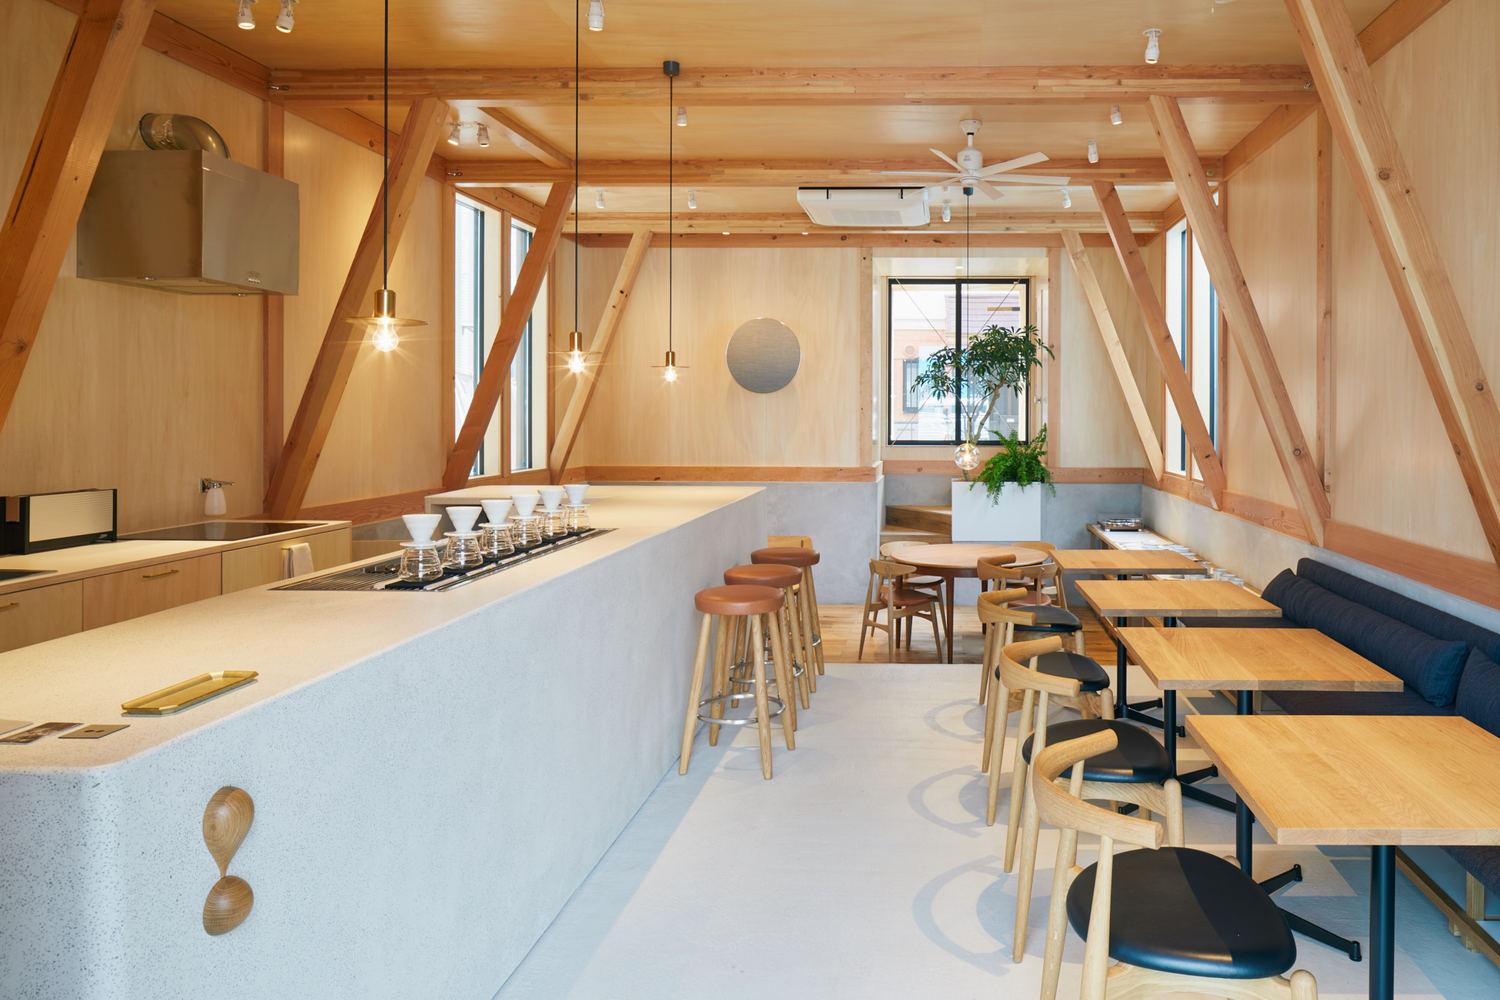 【東京咖啡館住宅二合一】花盡心思承繼祖業 將傳統日本工藝帶到未來